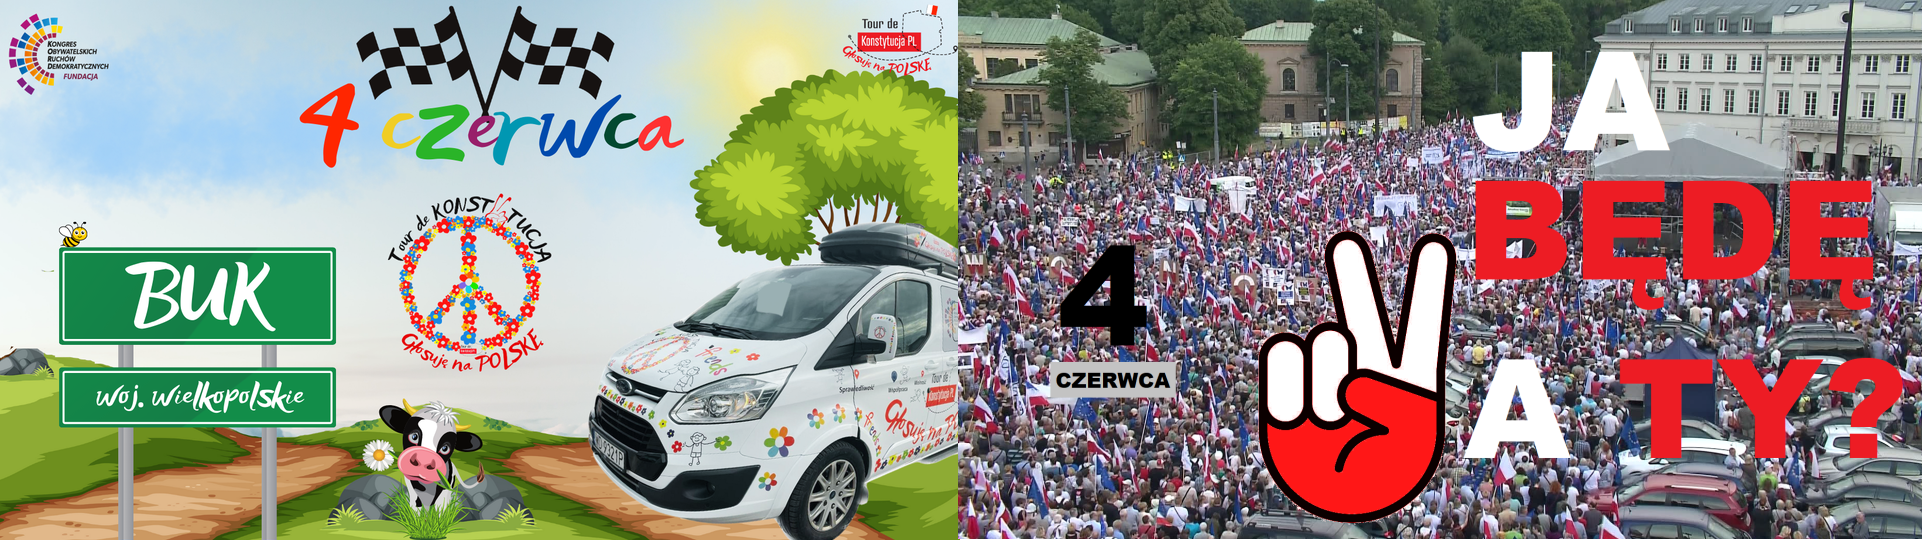 4 czerwca - inauguracja III edycji Tour de KonstytucjaPL i Marsz W Samo Południe